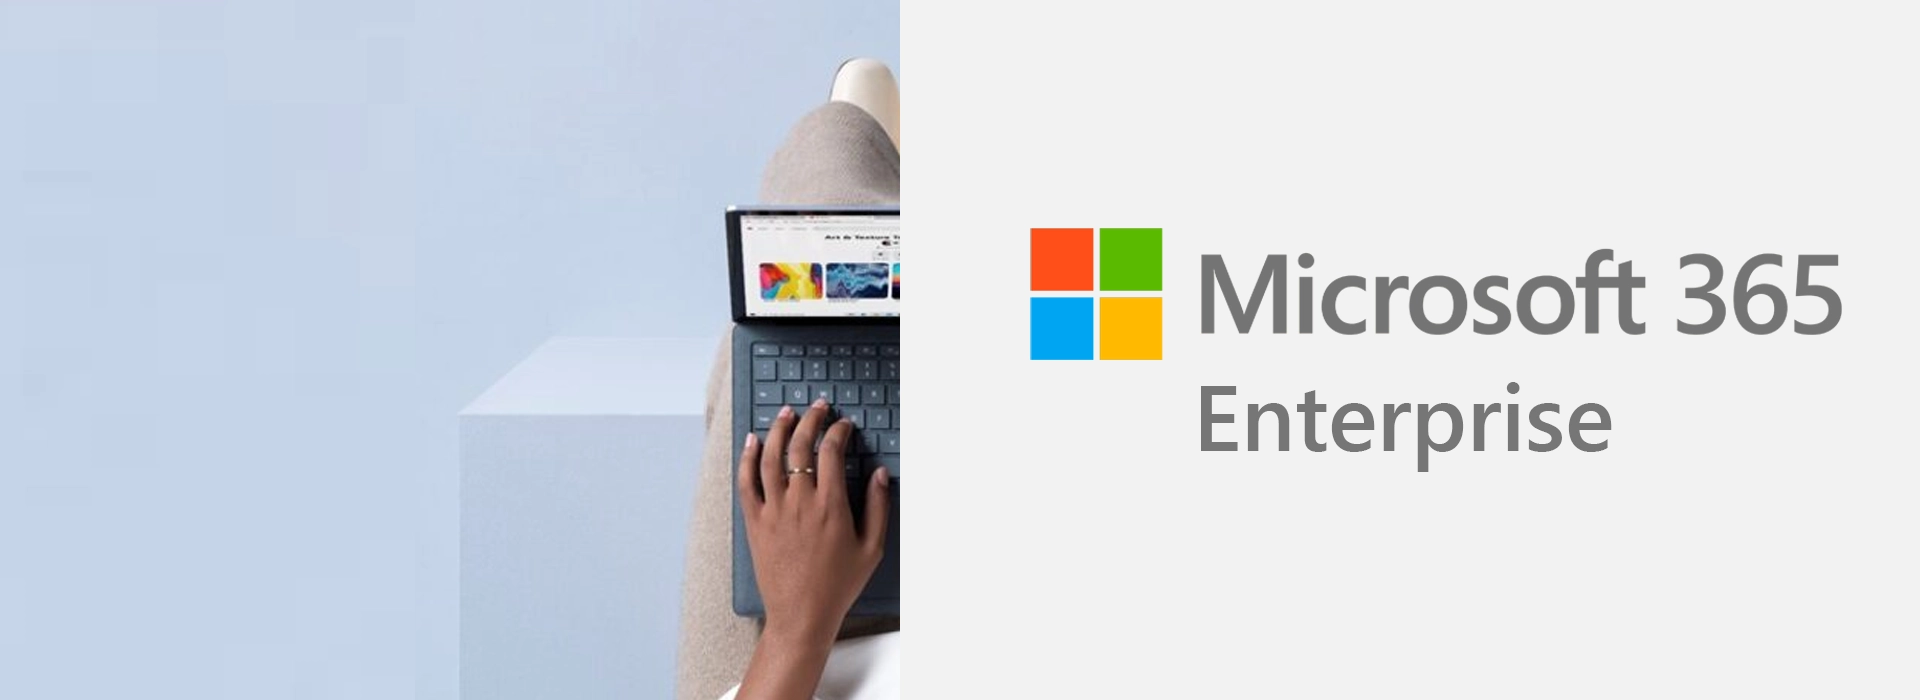 Microsoft 365 Enterprise | Sự lựa chọn hoàn hảo cho doanh nghiệp lớn